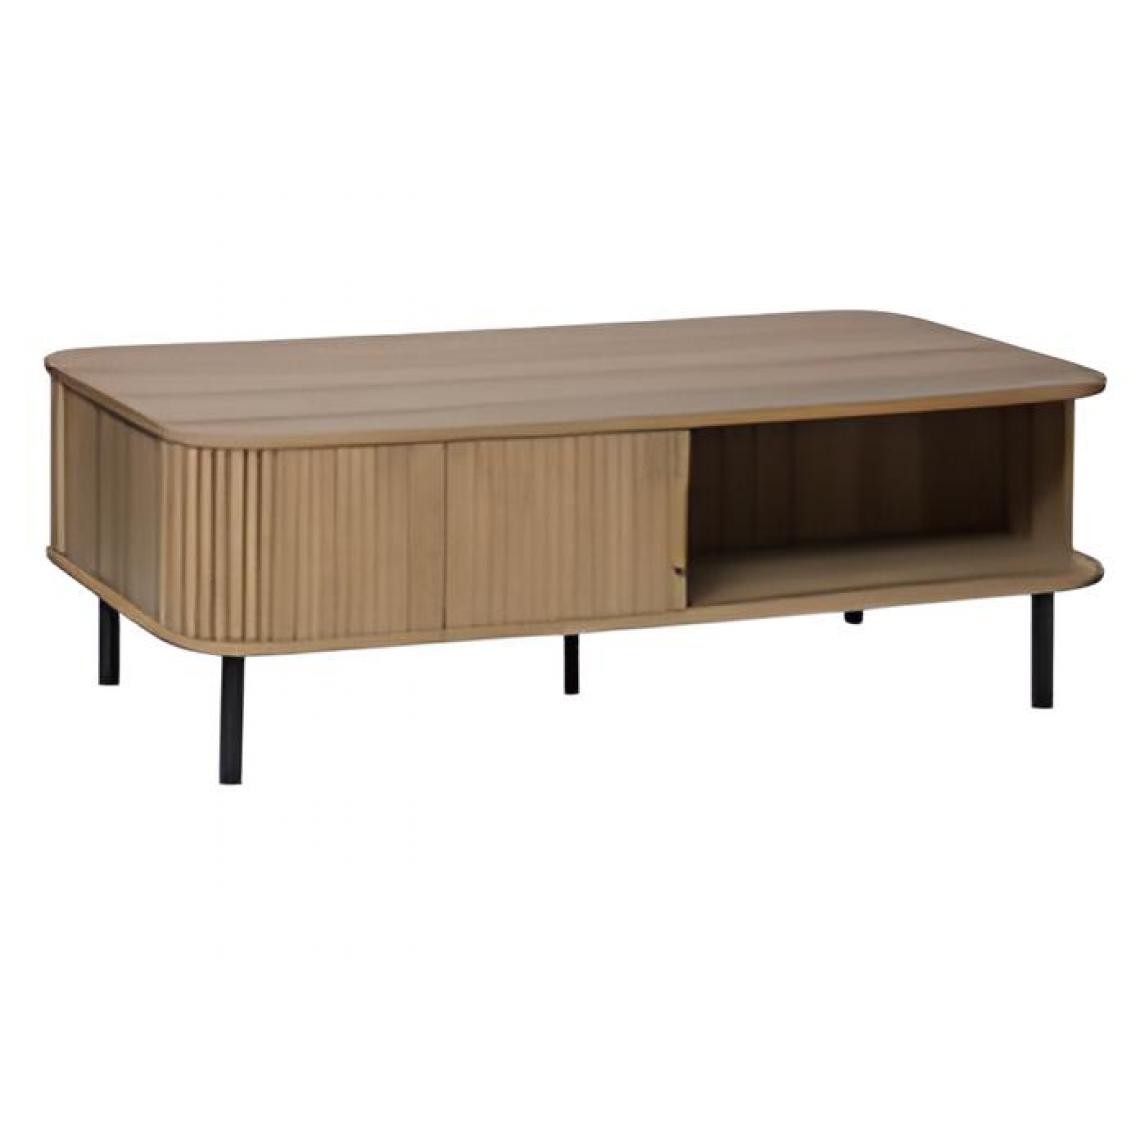 Pegane - Table basse en acier / bois coloris beige - longueur 120 x profondeur 60 x hauteur 41 cm - Tables basses